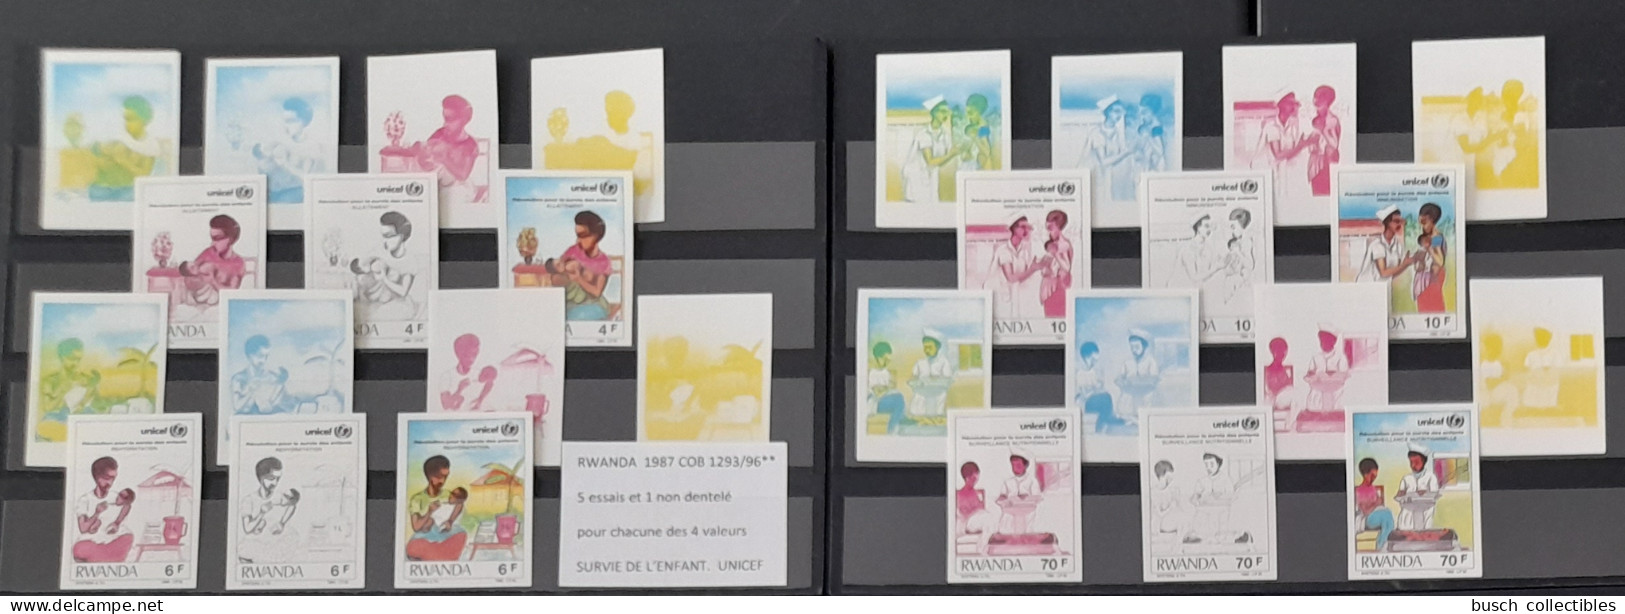 Rwanda 1987 COB 1293 - 1296 Color Proofs Essais Couleur IMPERF ND Révolution Pour Survie De L'Enfant UNICEF Child Kind - Nuevos